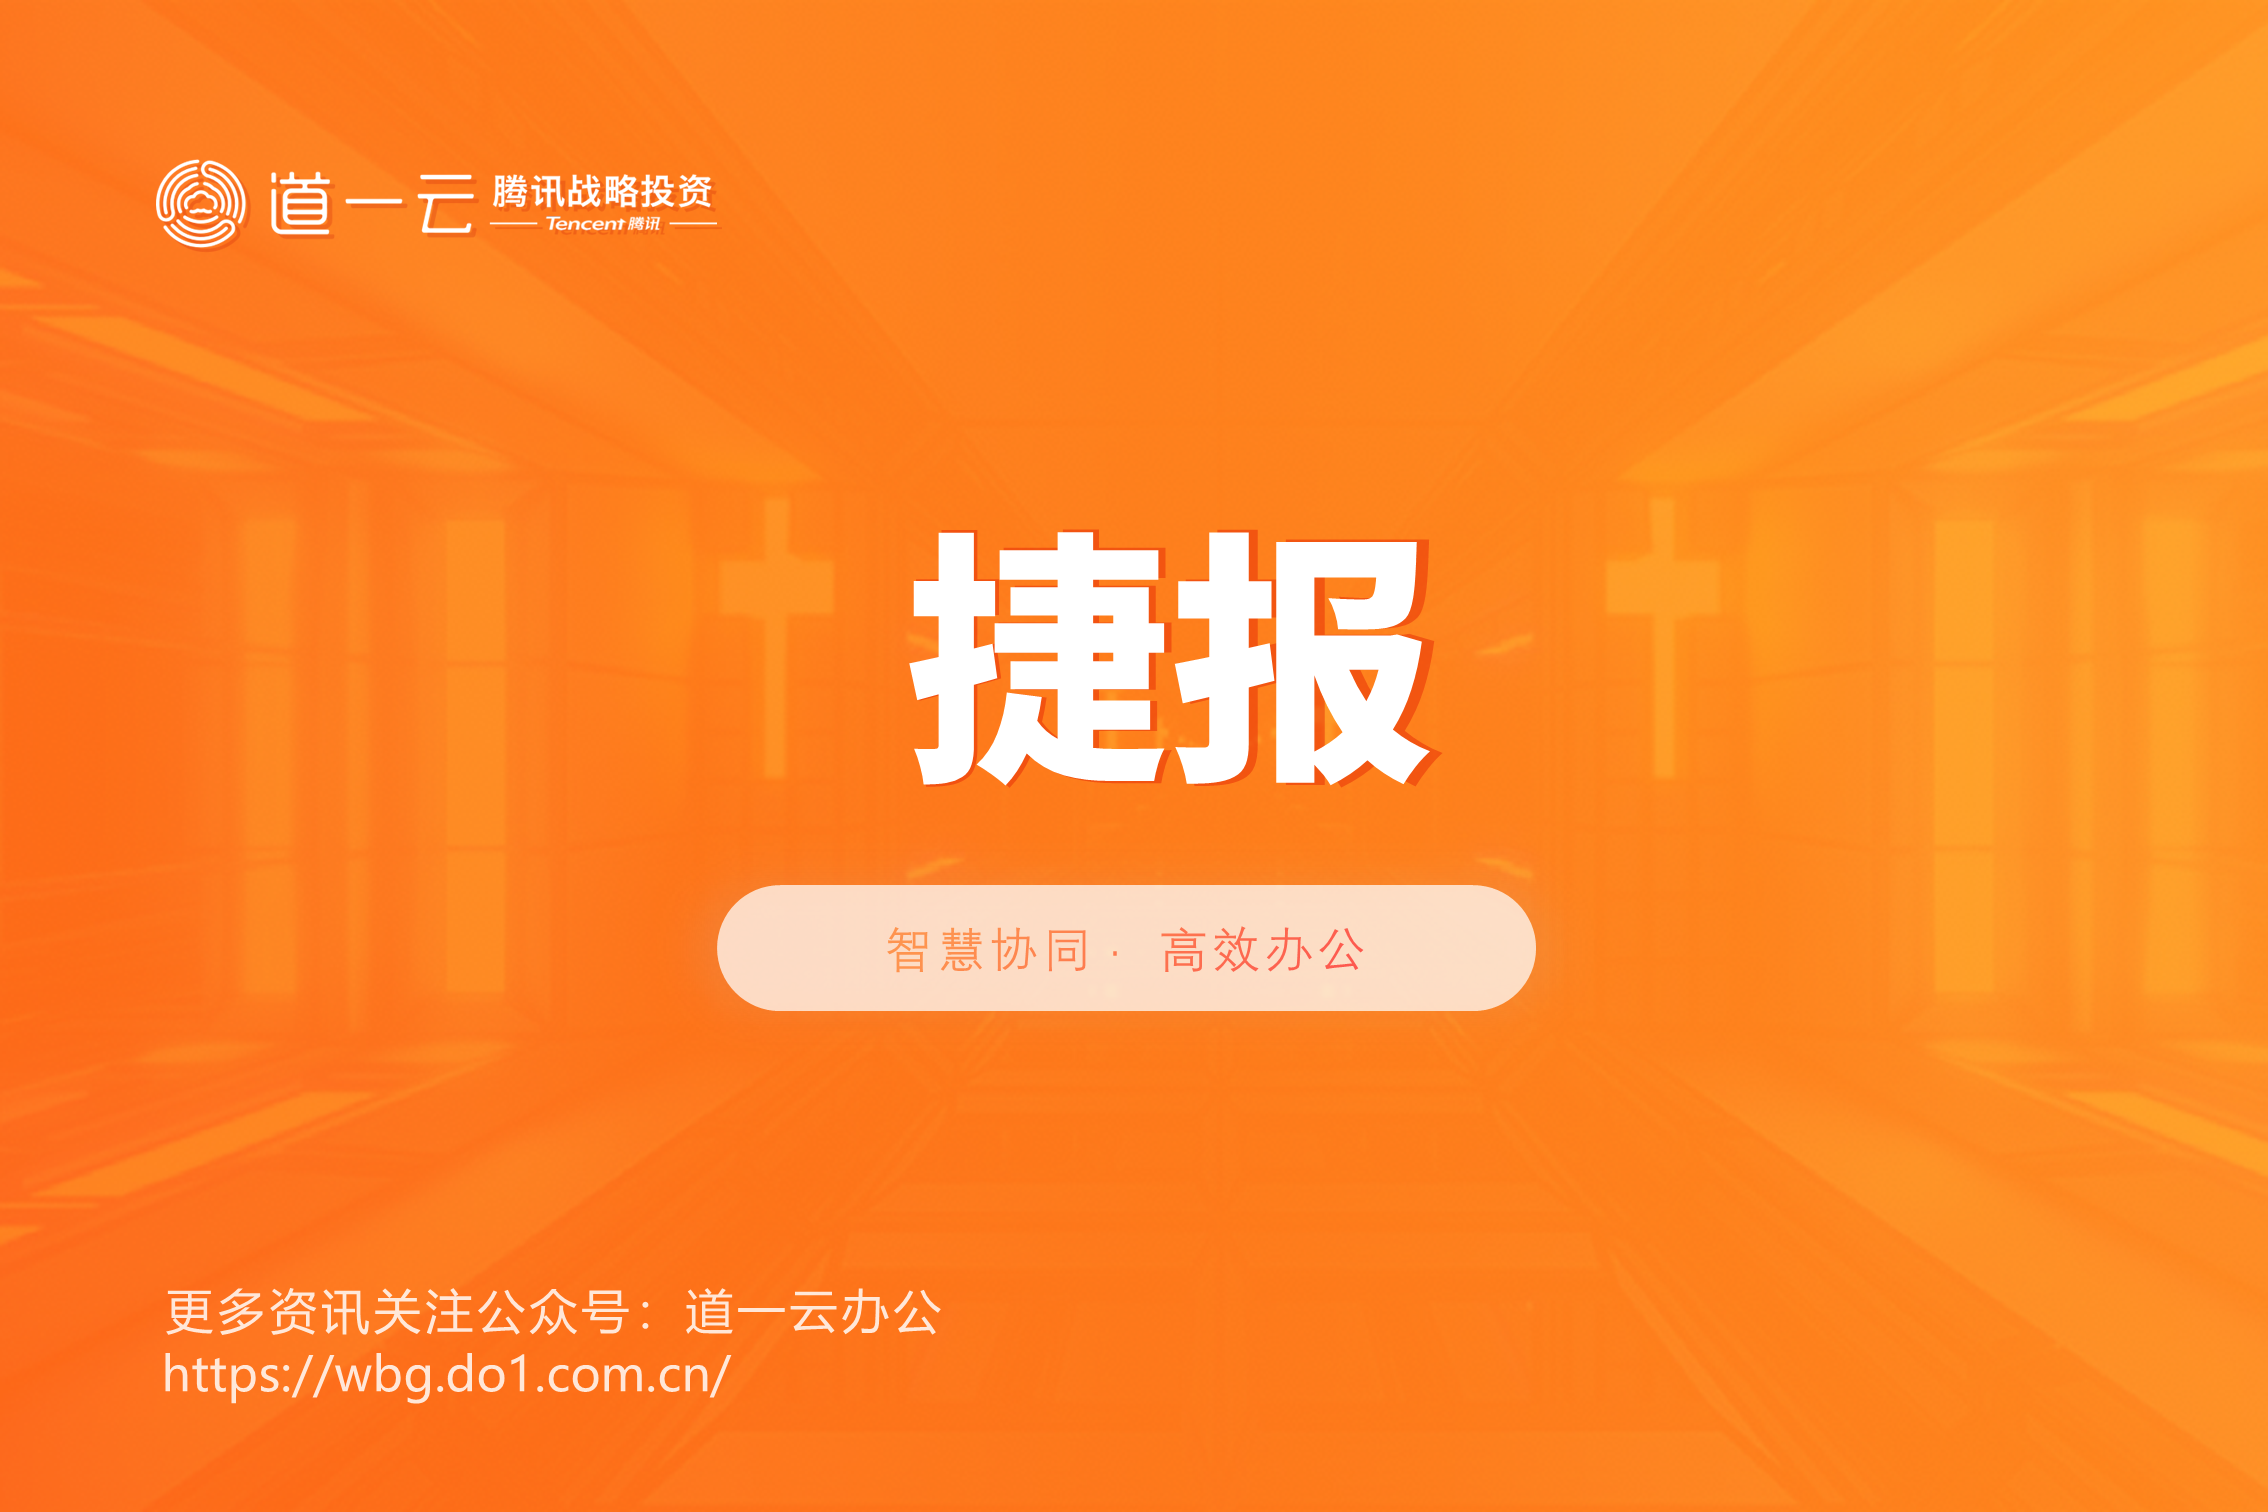 捷报-杏盛代表企业微信服务商生态，上榜《微信就业影响力报告》